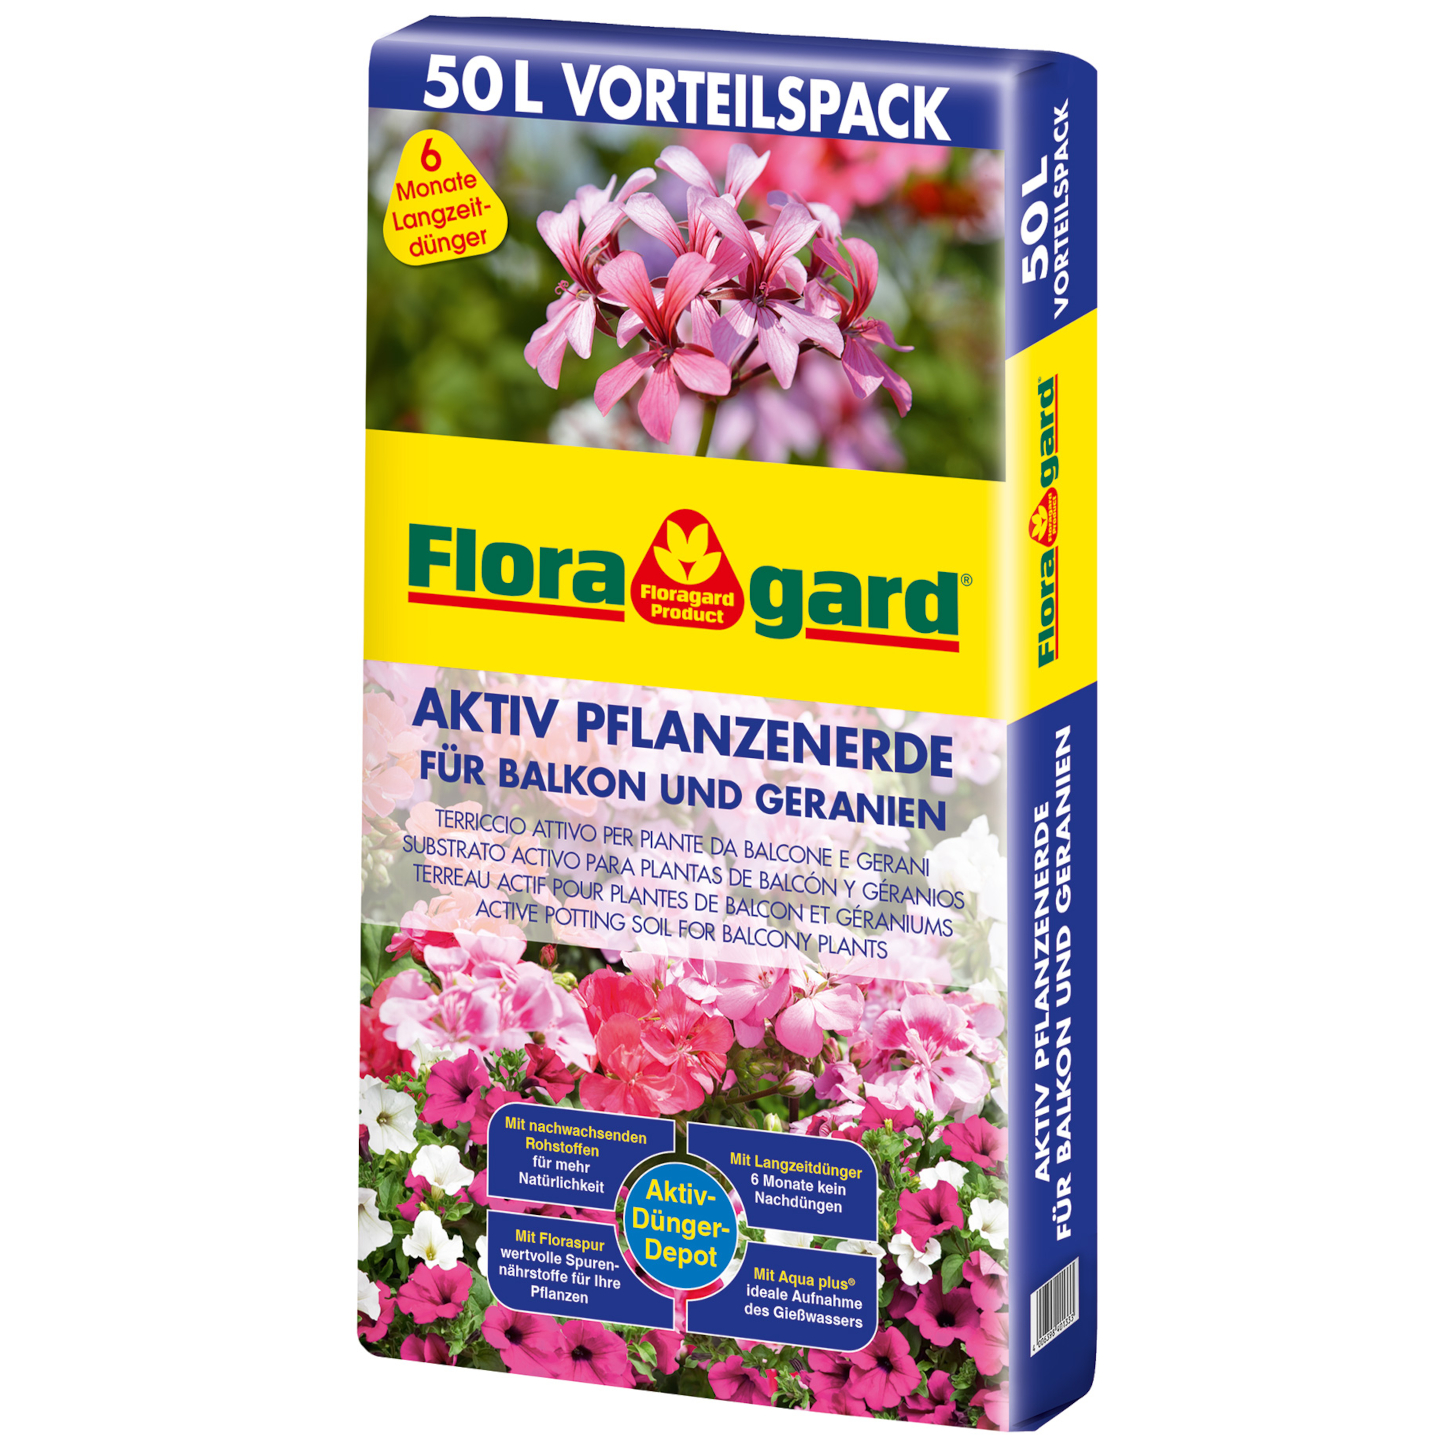 Floragard Aktiv Pflanzenerde für Balkon und Geranien 1x50 L von Floragard